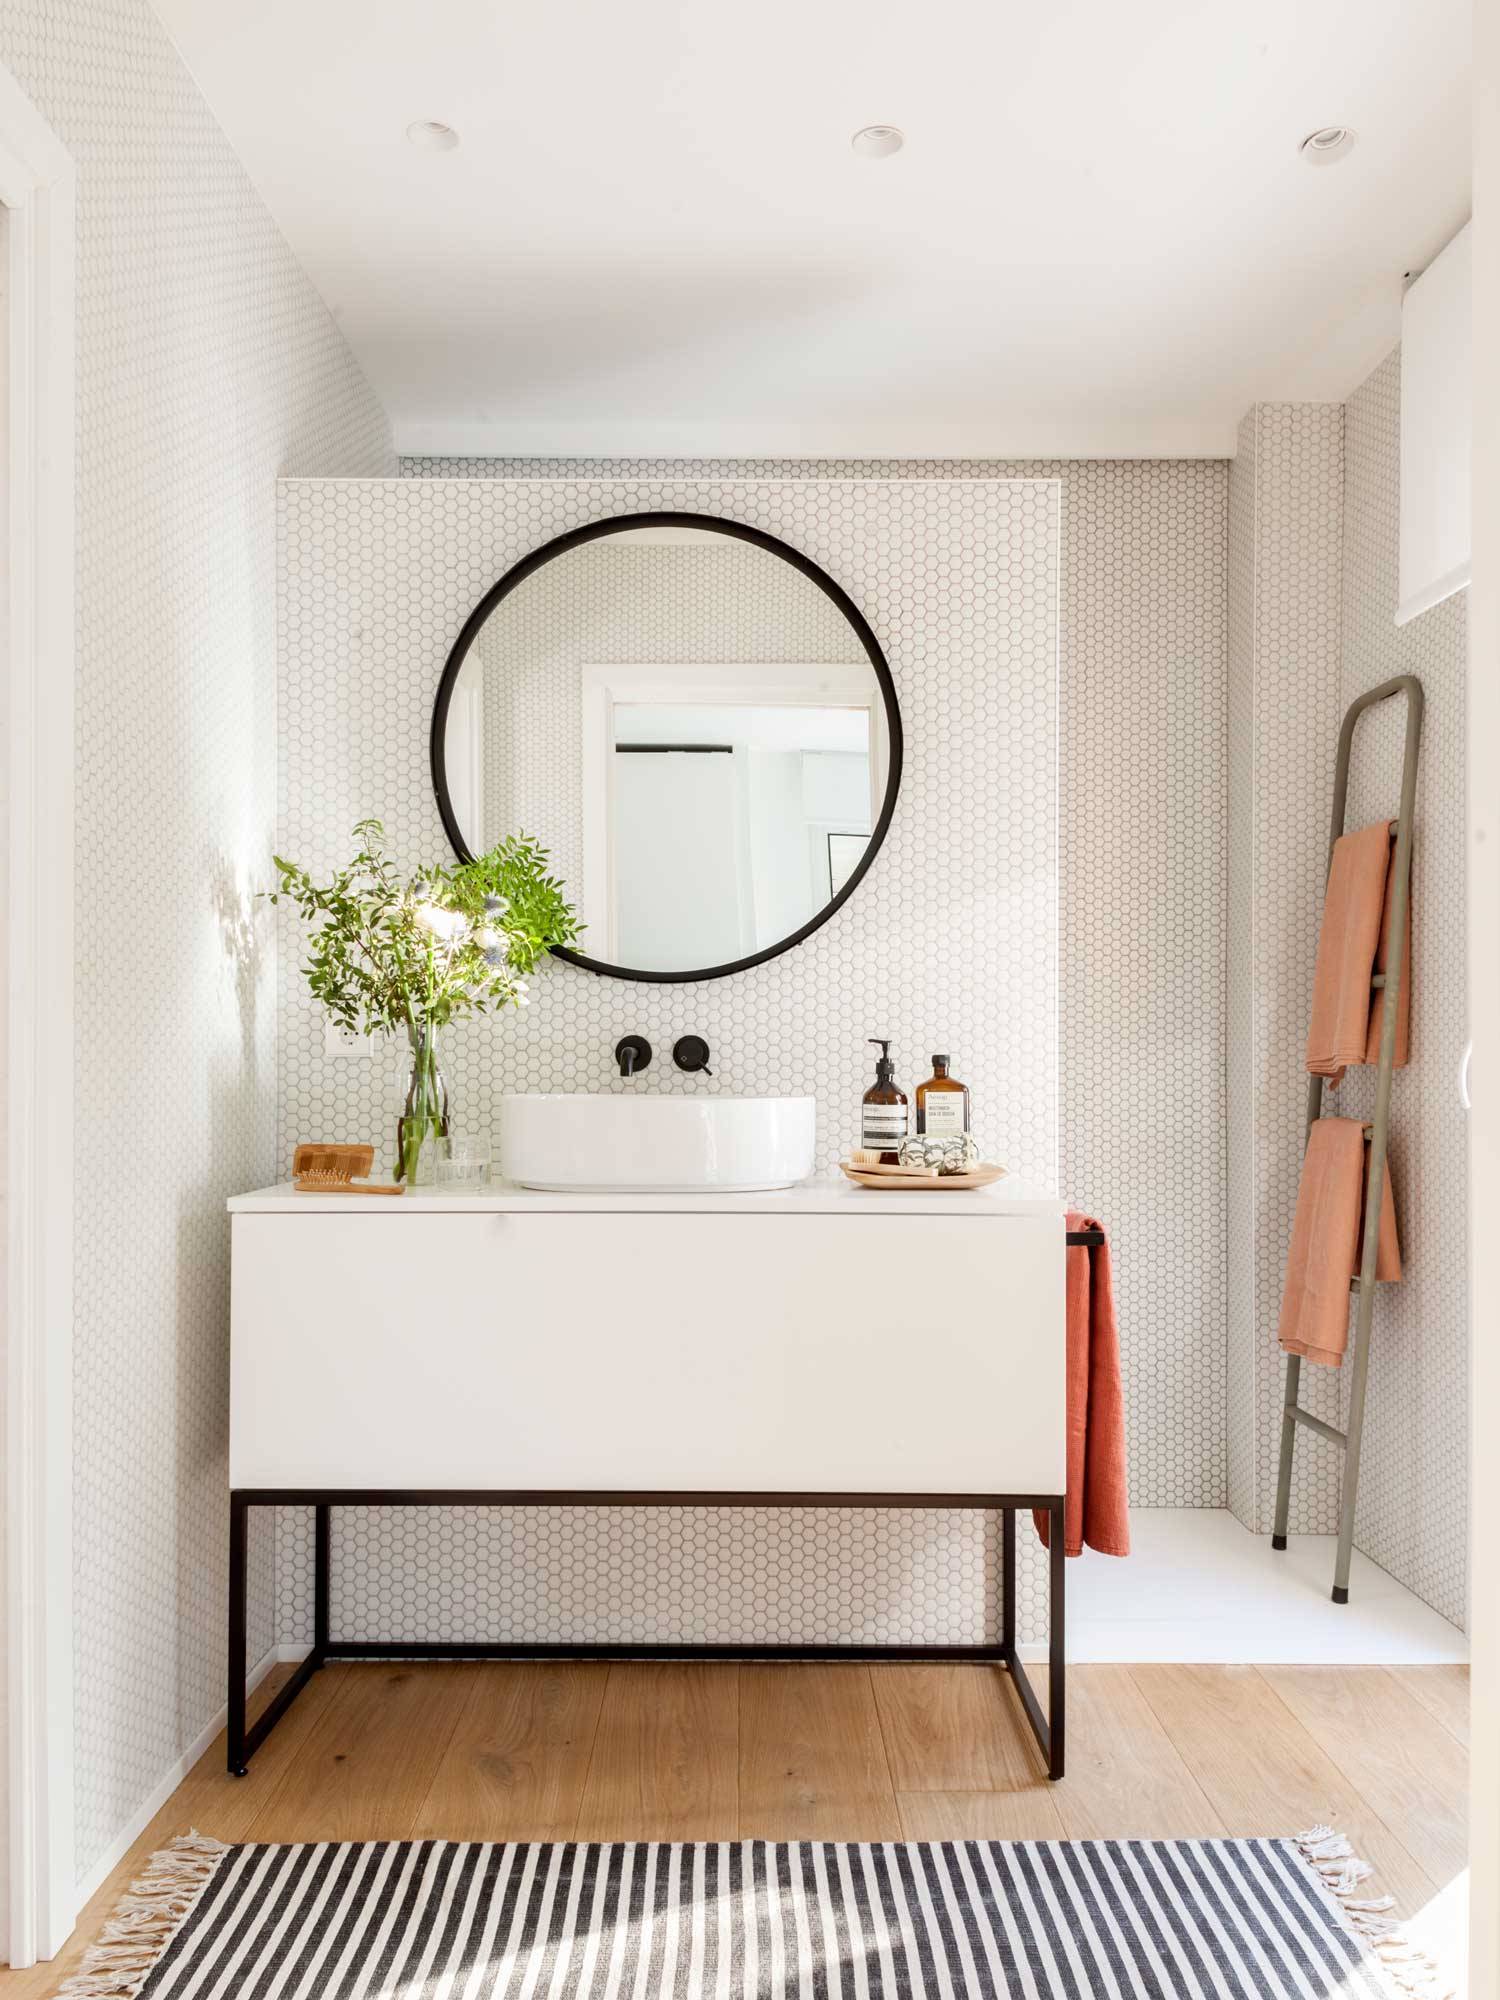 Baño con mueble blanco, pared de mosaico y espejo redondo.